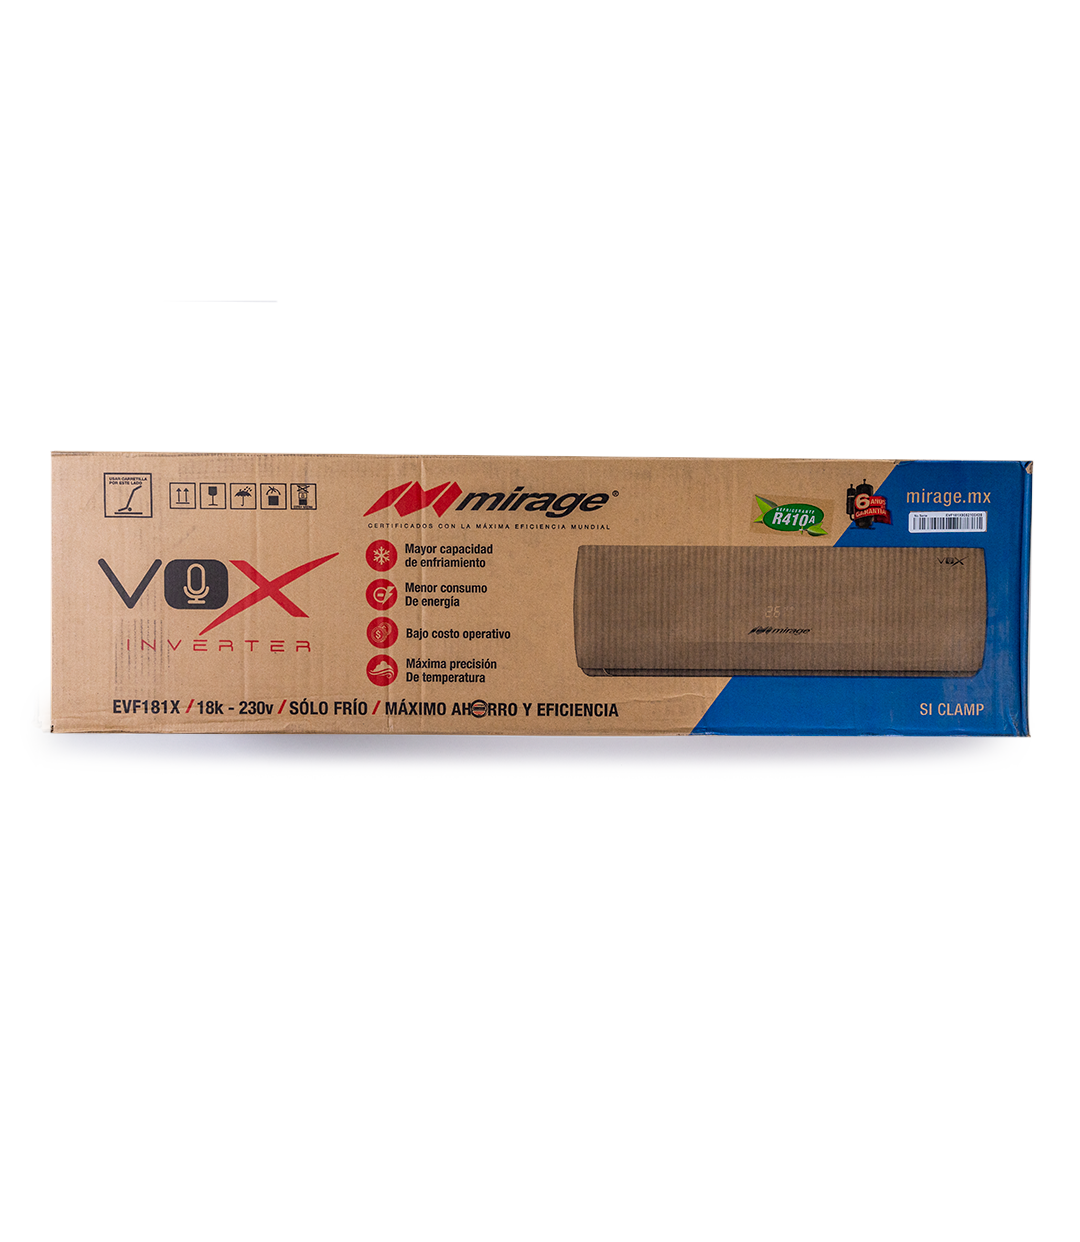 Vox Inverter CVF181X 220v 1.5 Toneladas